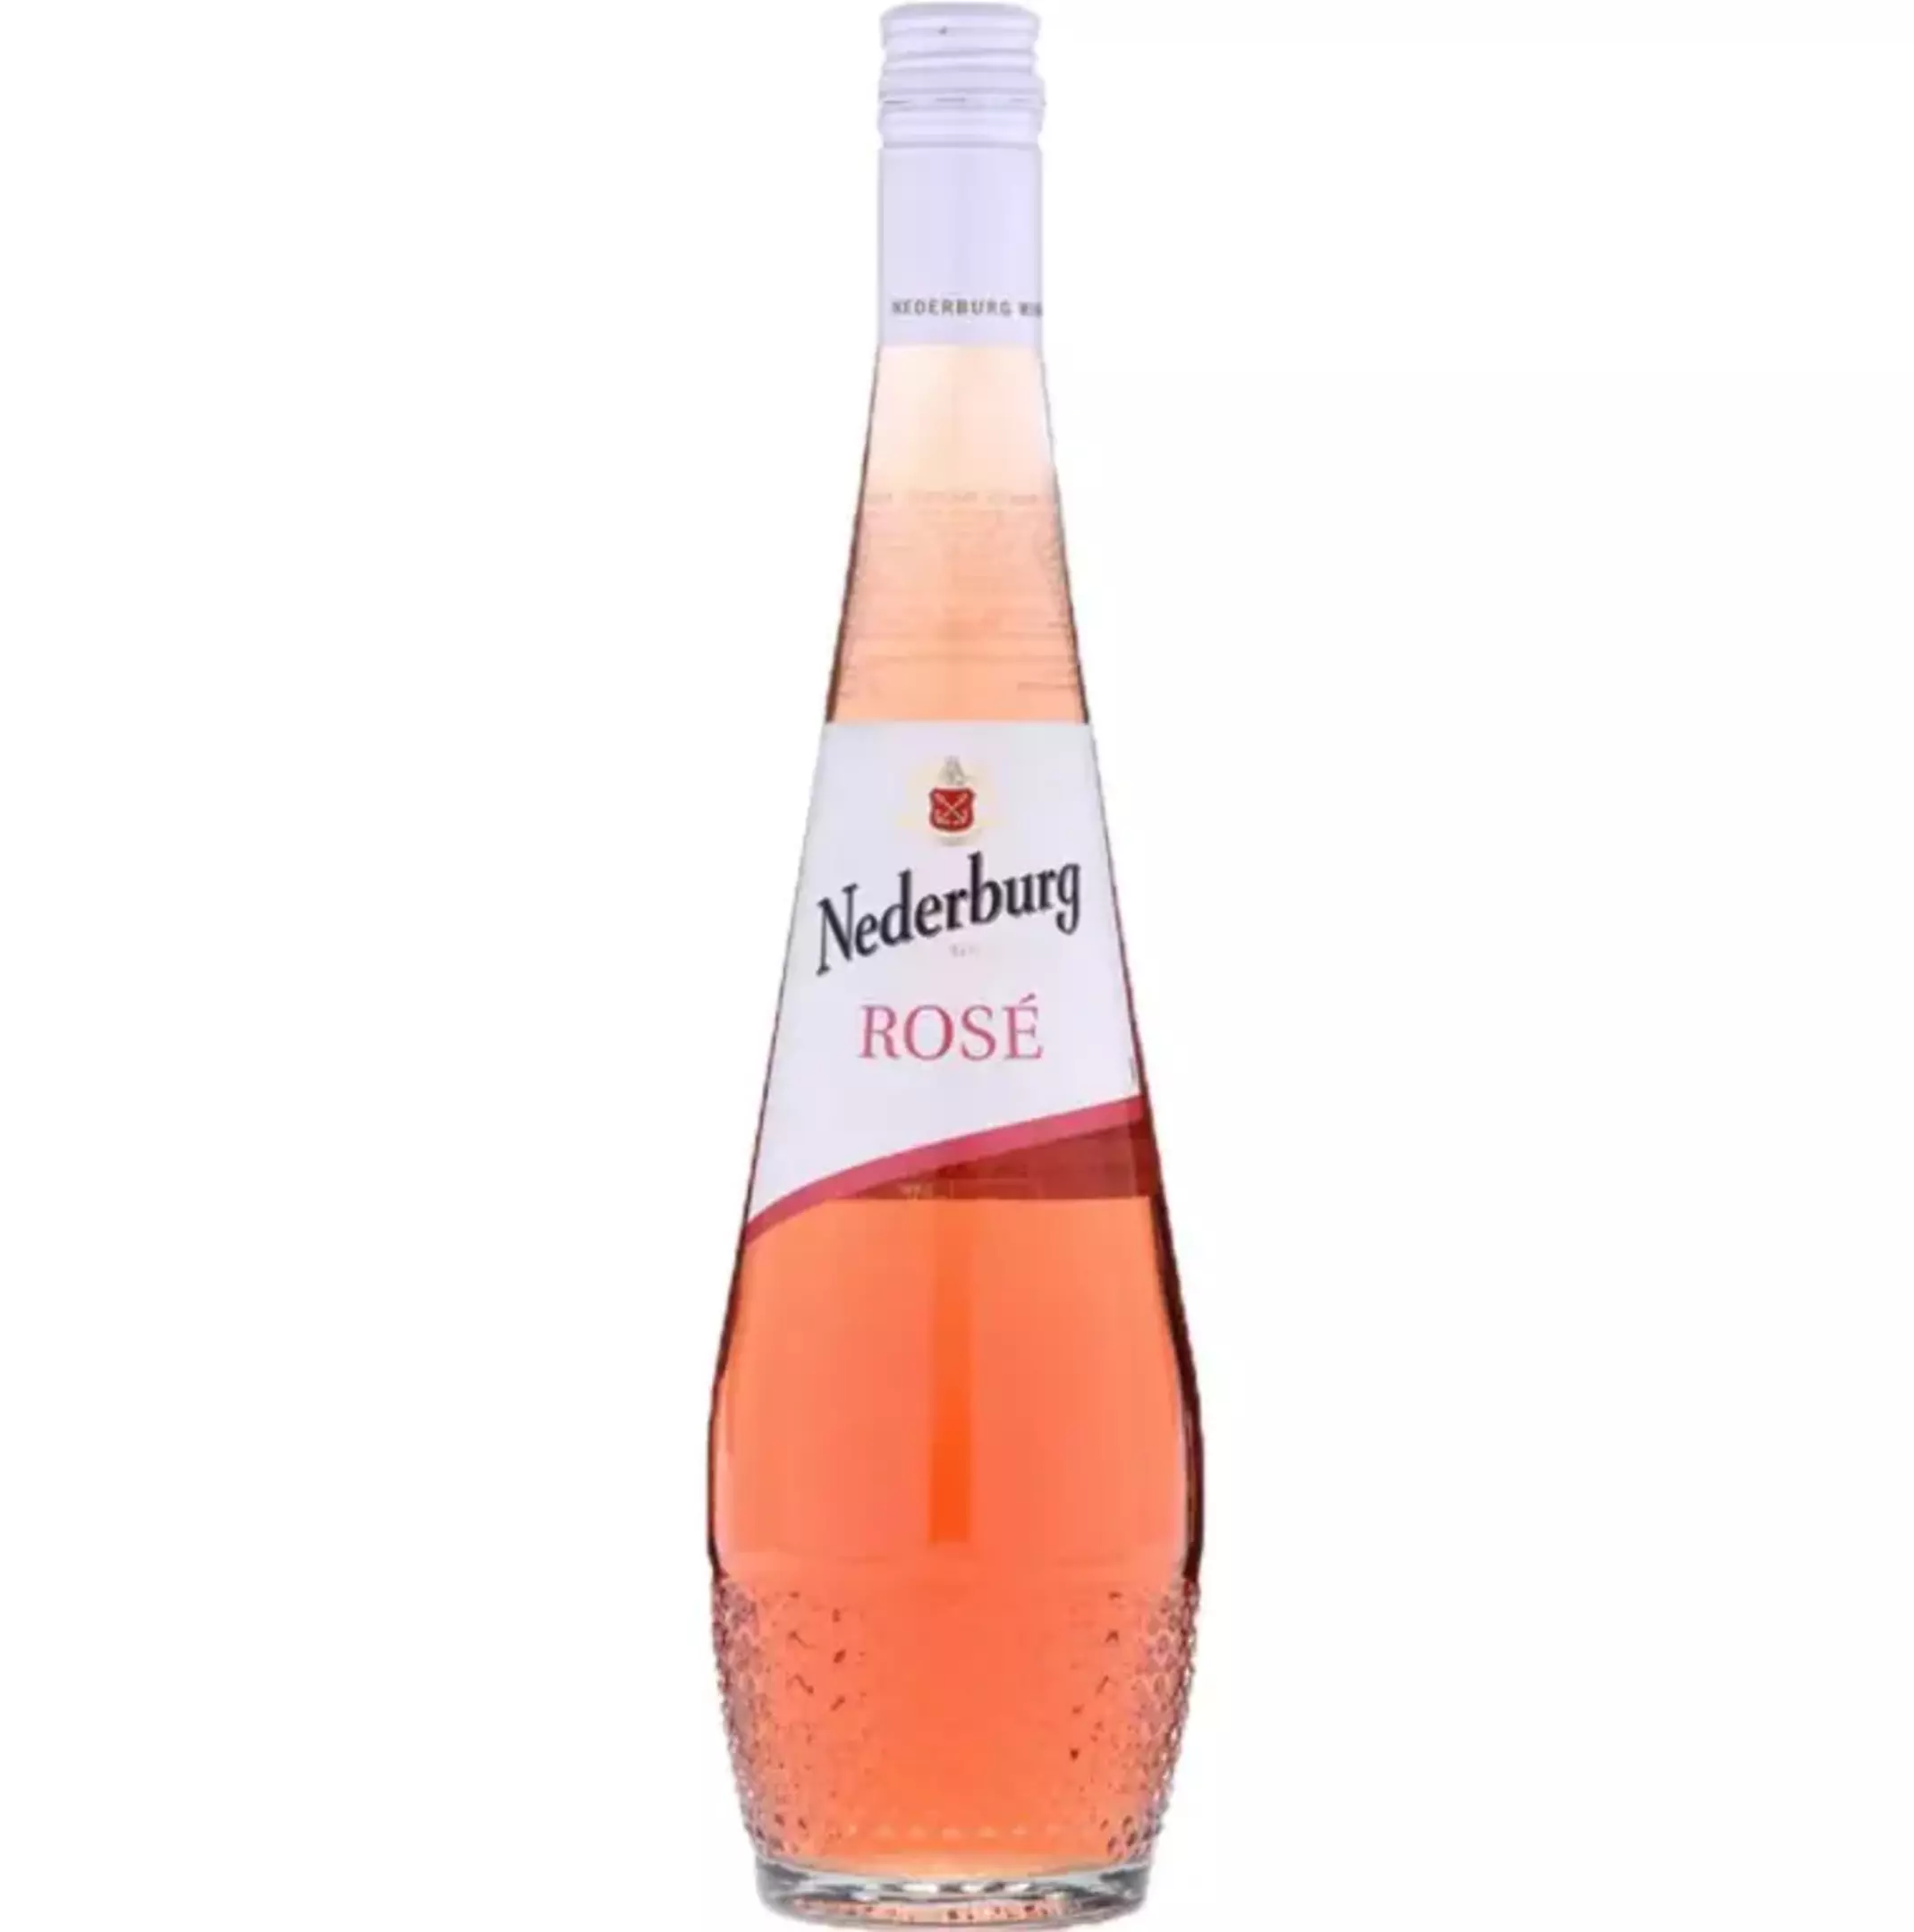 Nederburg Rosé